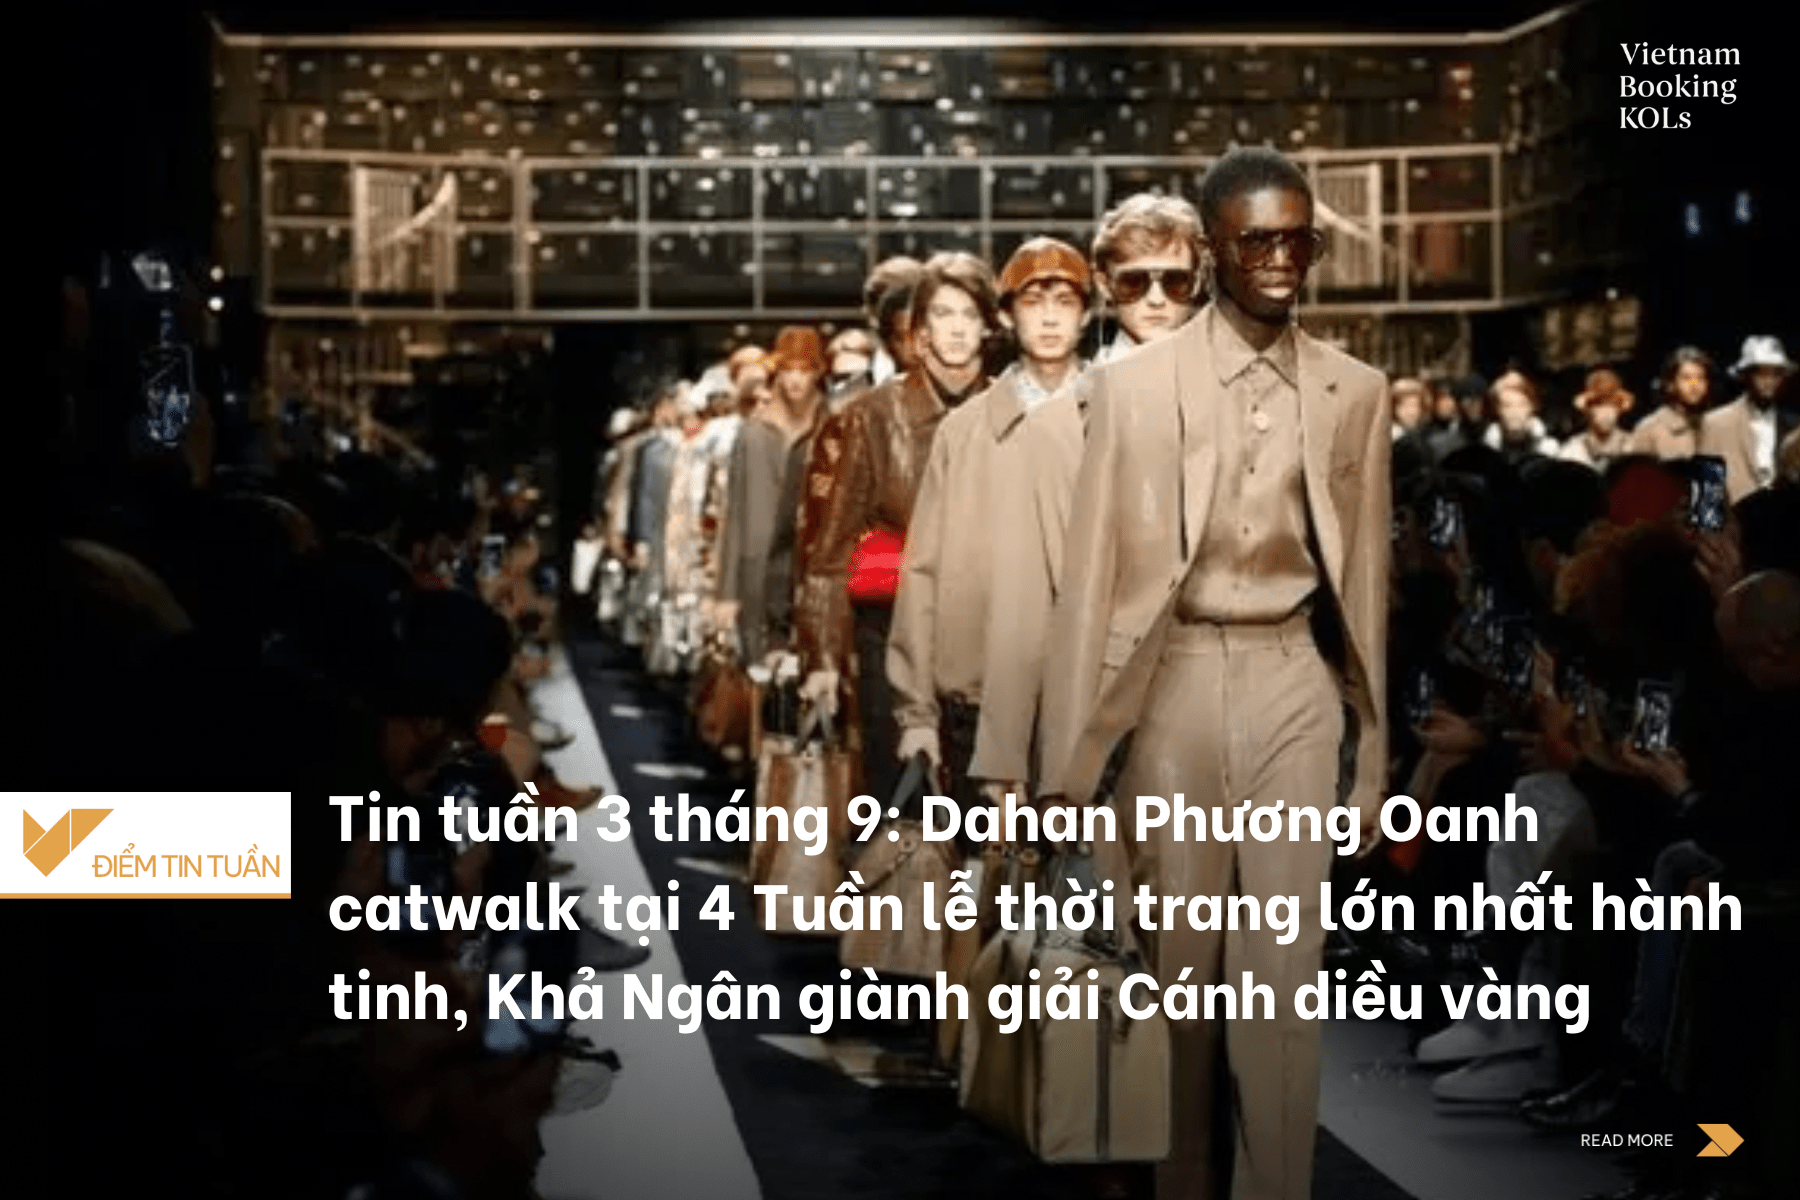 Tin tuần 3 tháng 9: Dahan Phương Oanh catwalk tại 4 Tuần lễ thời trang lớn nhất hành tinh, Khả Ngân giành giải Cánh diều vàng